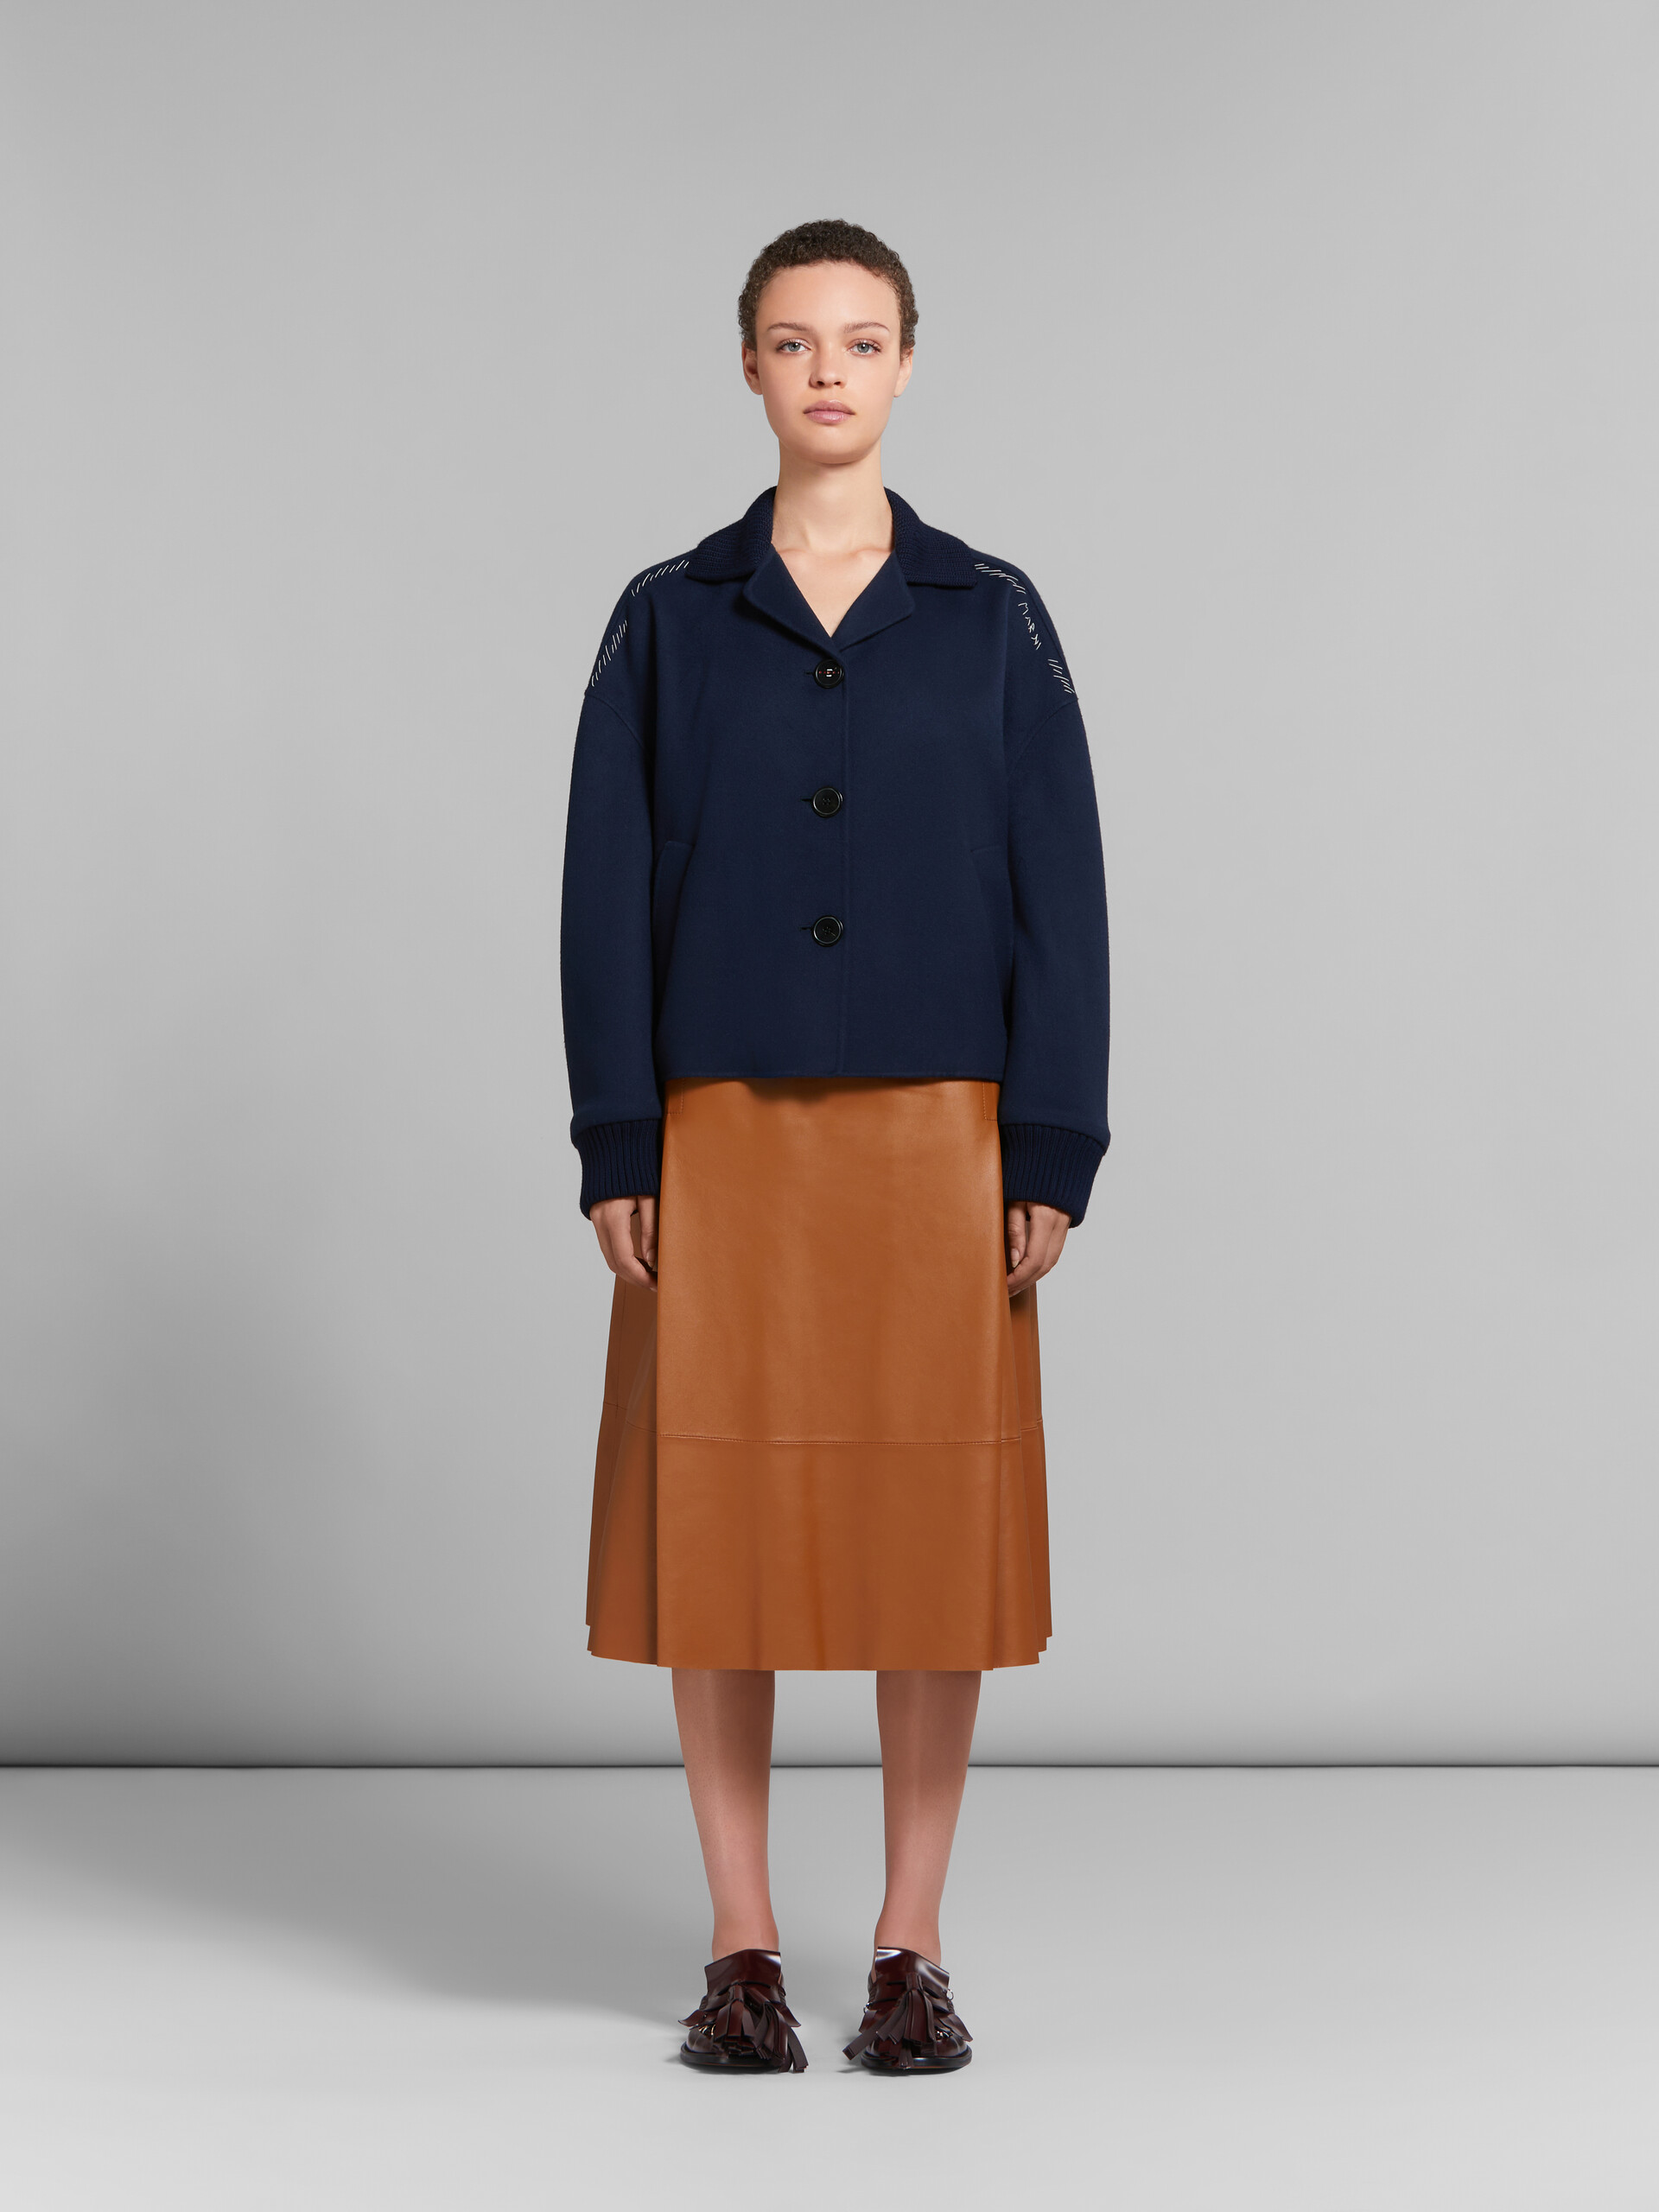 Giacca in lana e cashmere blu scuro con bordi in maglia - Giacche - Image 2